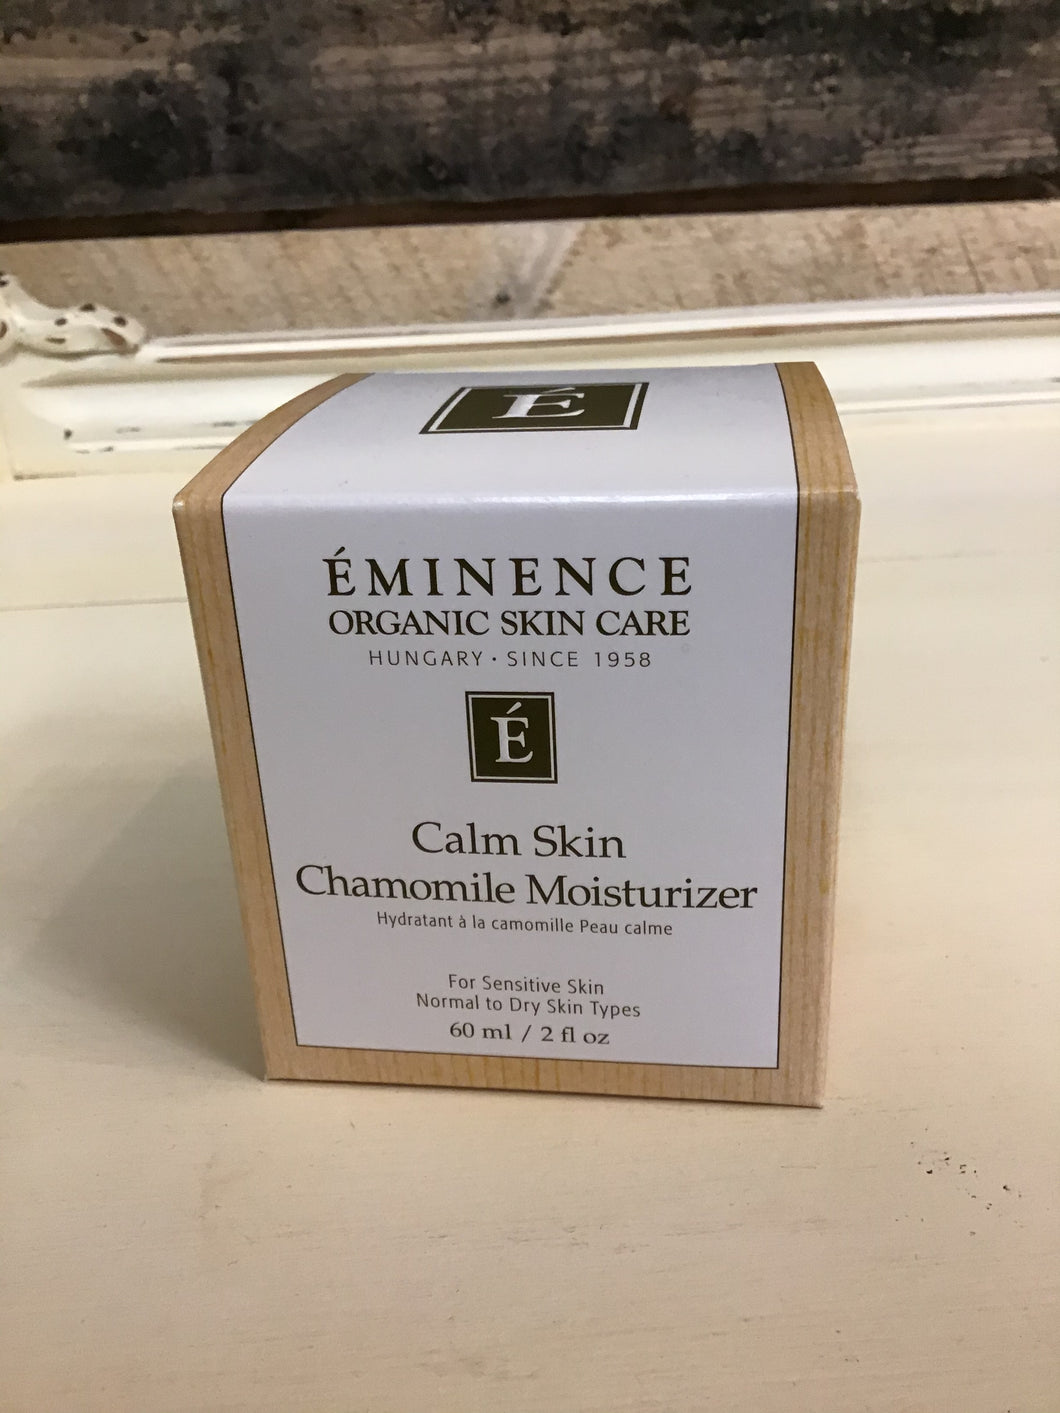 Calm skin chamomile moisturizer